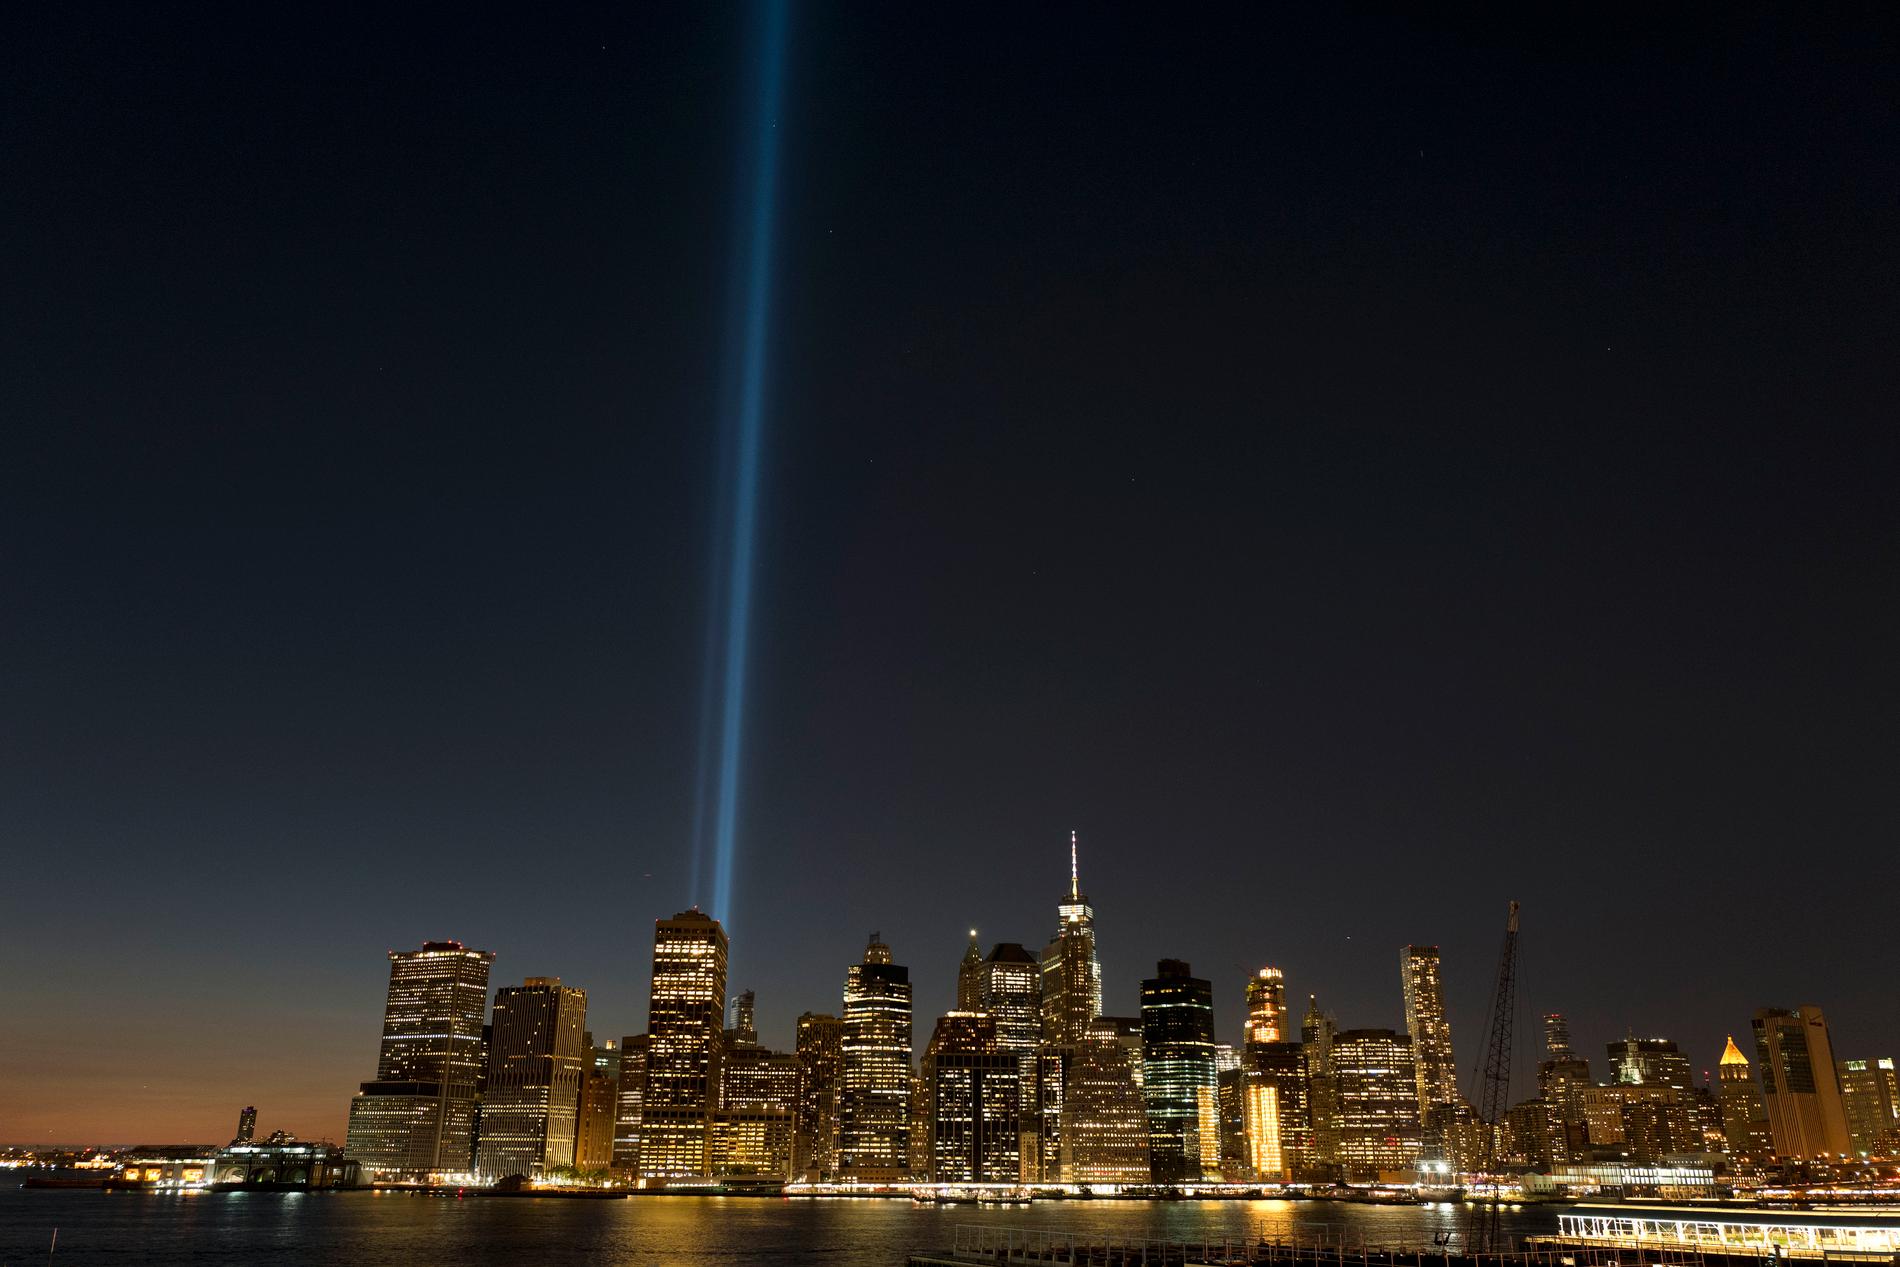 2017 hedrades offren i 11 september-attacken med två pelare av ljus som syntes över hela New York. Arkivbild.